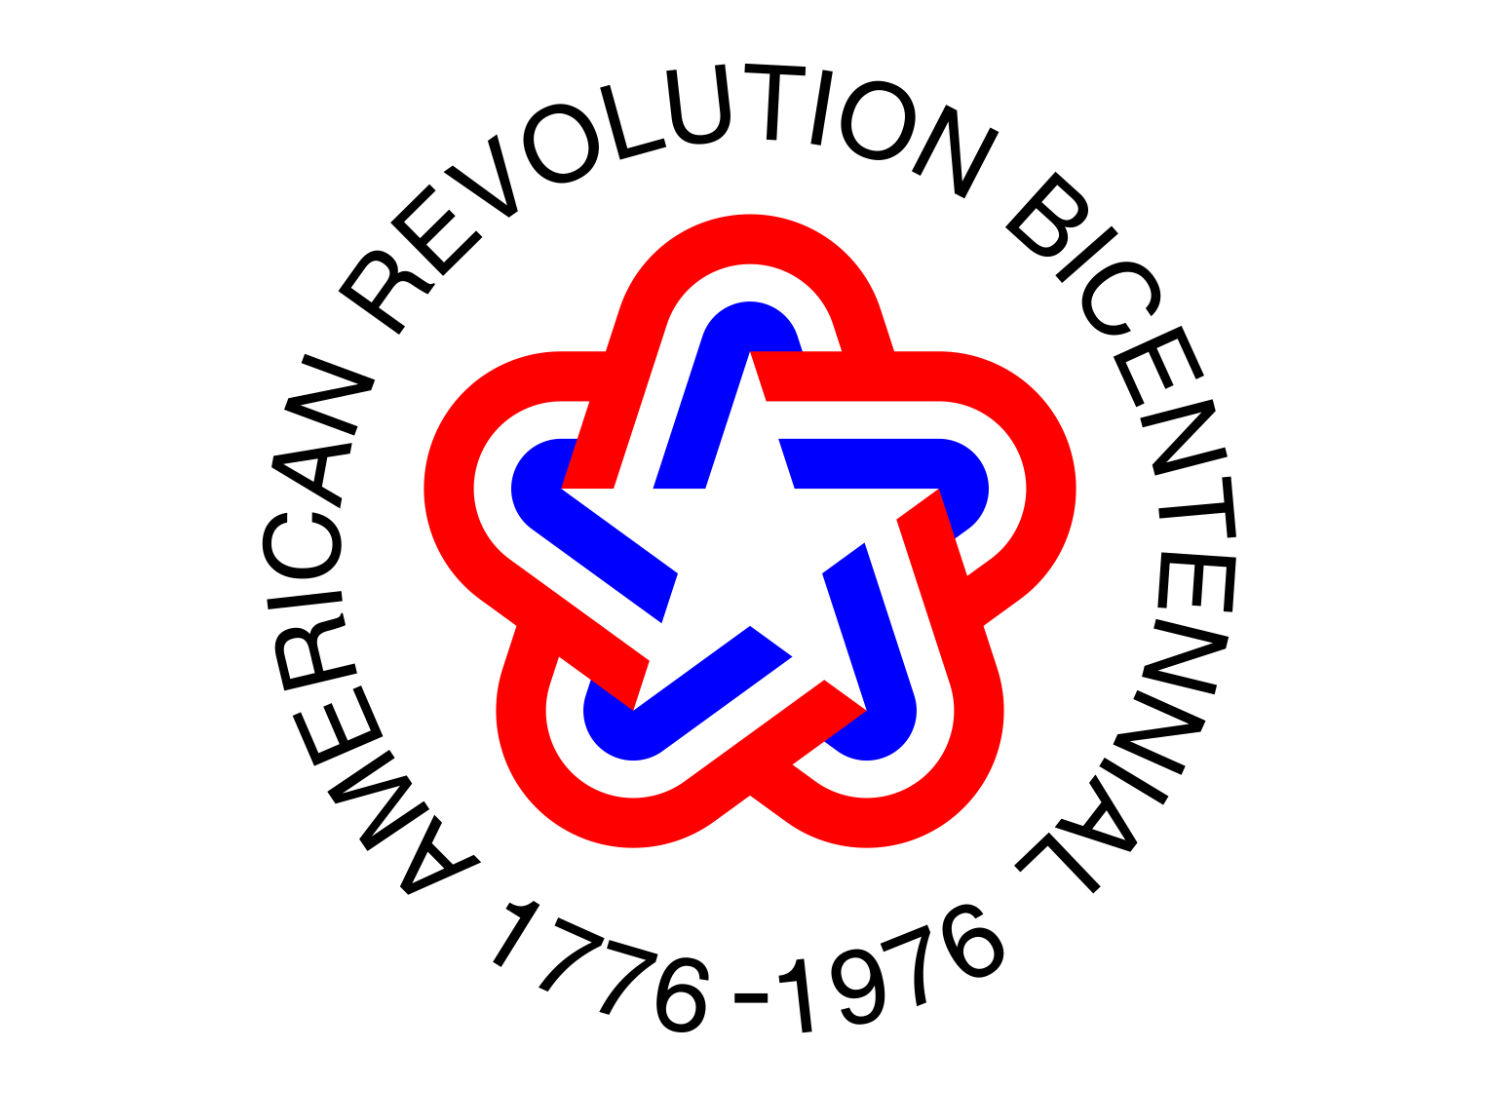 Logo zum 200. Jahrestag der USA. Entworfen von Bruce Blackburn, Quelle: Wikipedia